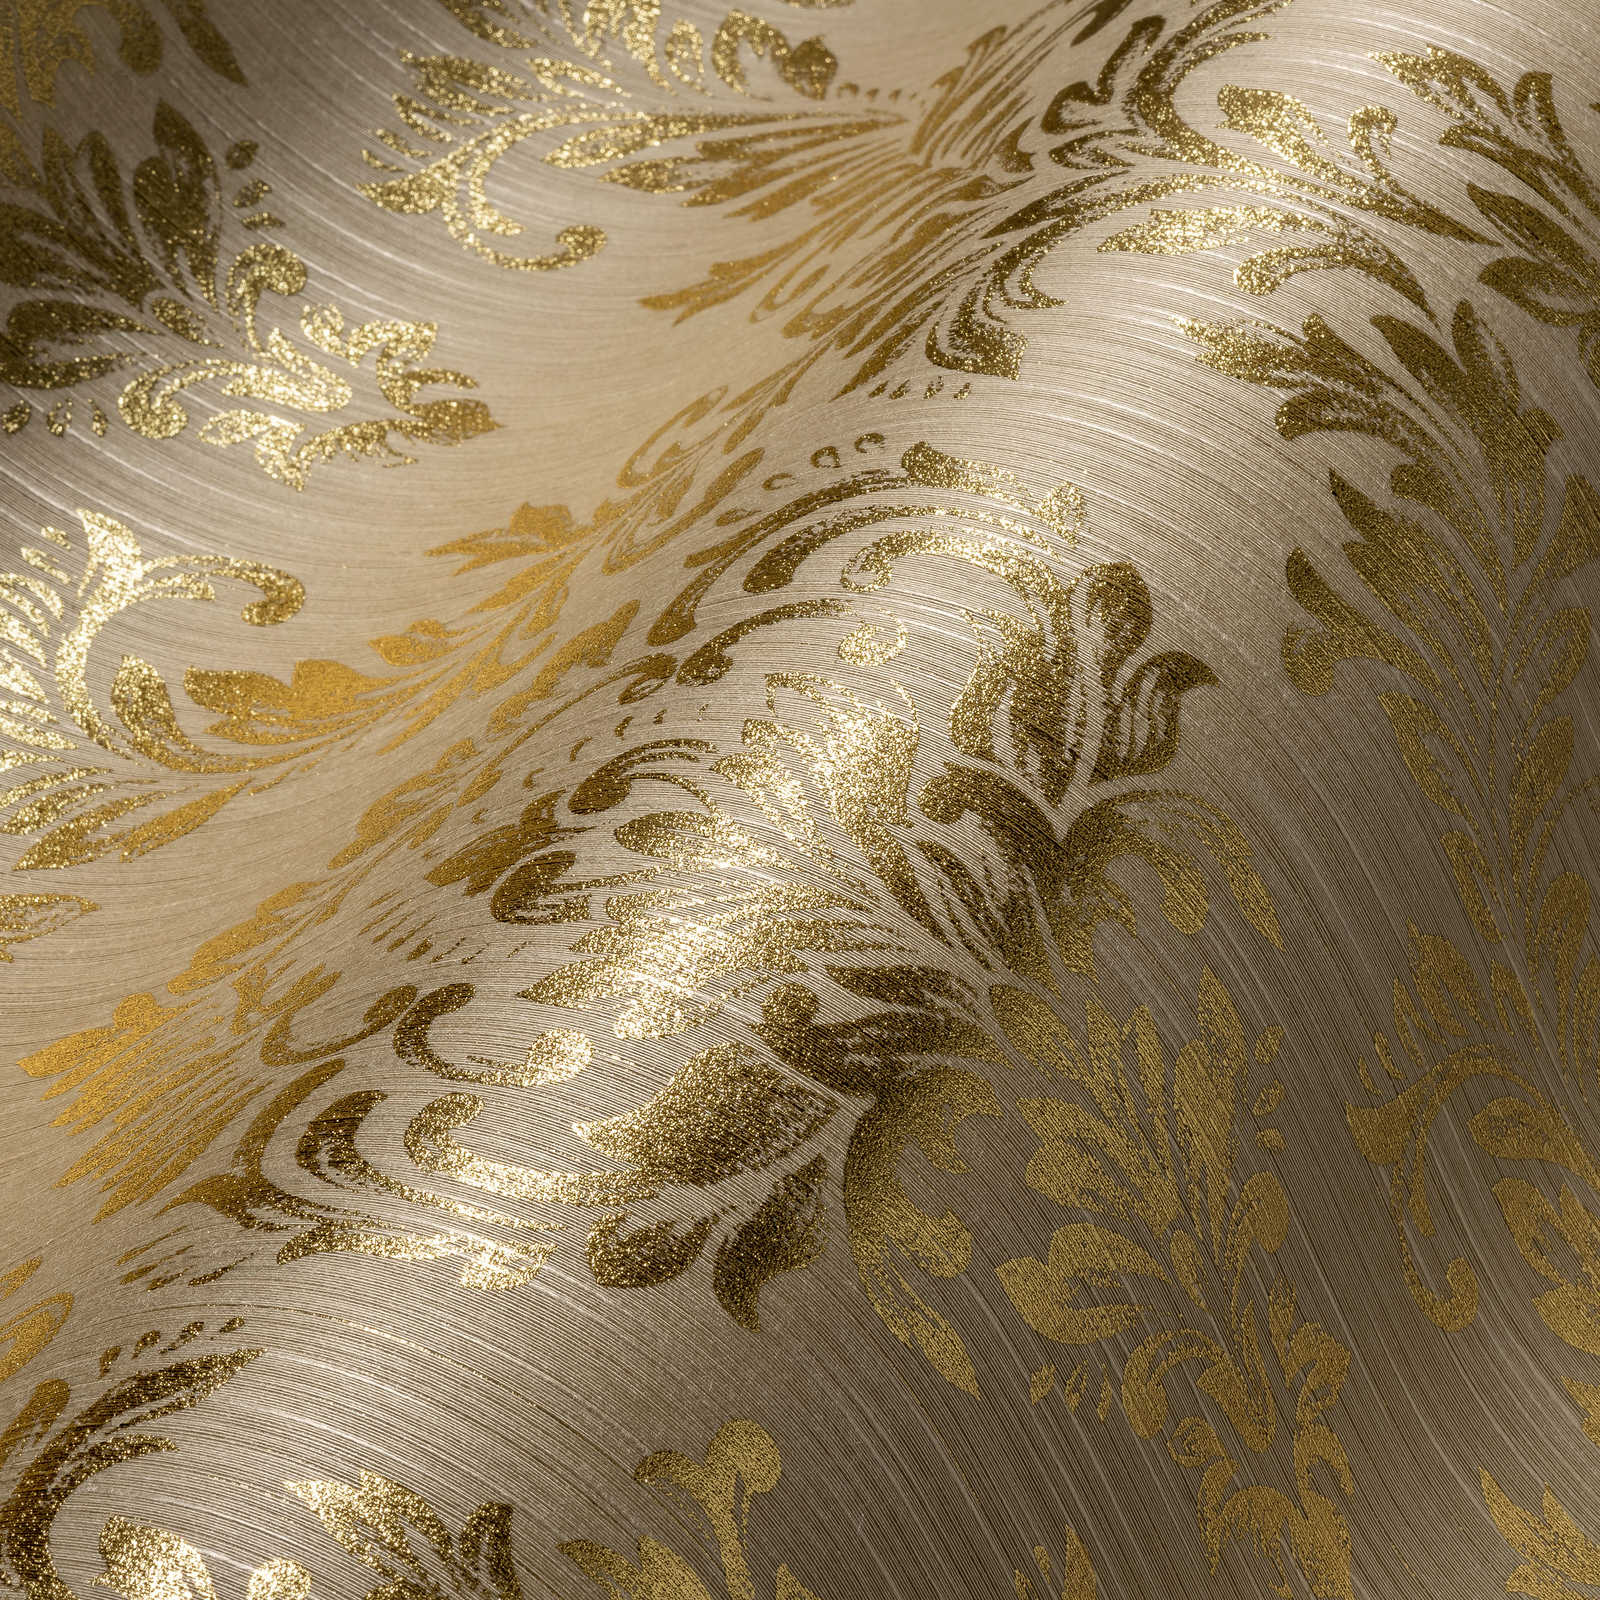             Papier peint ornemental floral avec effet scintillant doré - or, beige
        